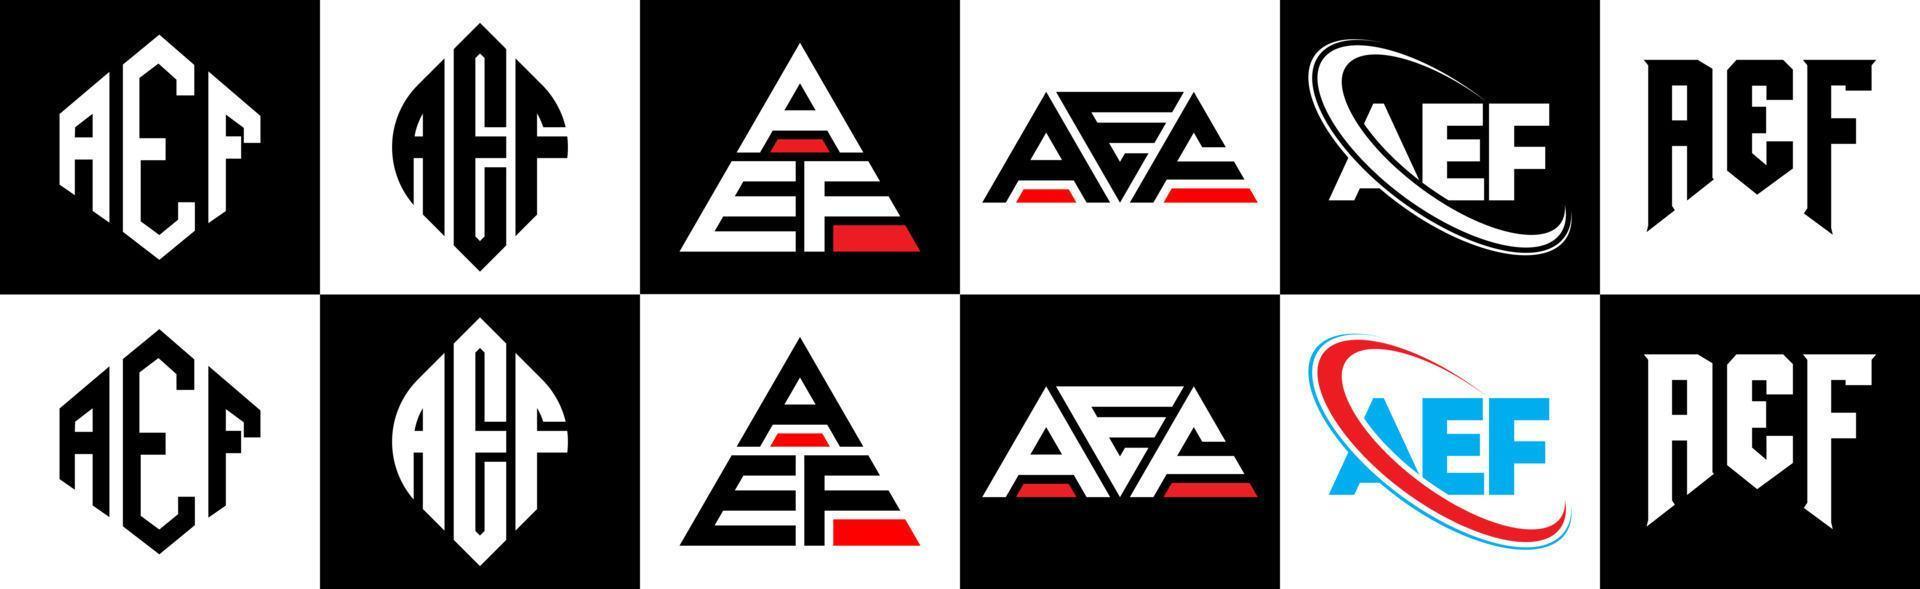 aef-Buchstaben-Logo-Design in sechs Stilen. aef polygon, kreis, dreieck, hexagon, flacher und einfacher stil mit schwarz-weißem farbvariationsbuchstabenlogo in einer zeichenfläche. aef minimalistisches und klassisches Logo vektor